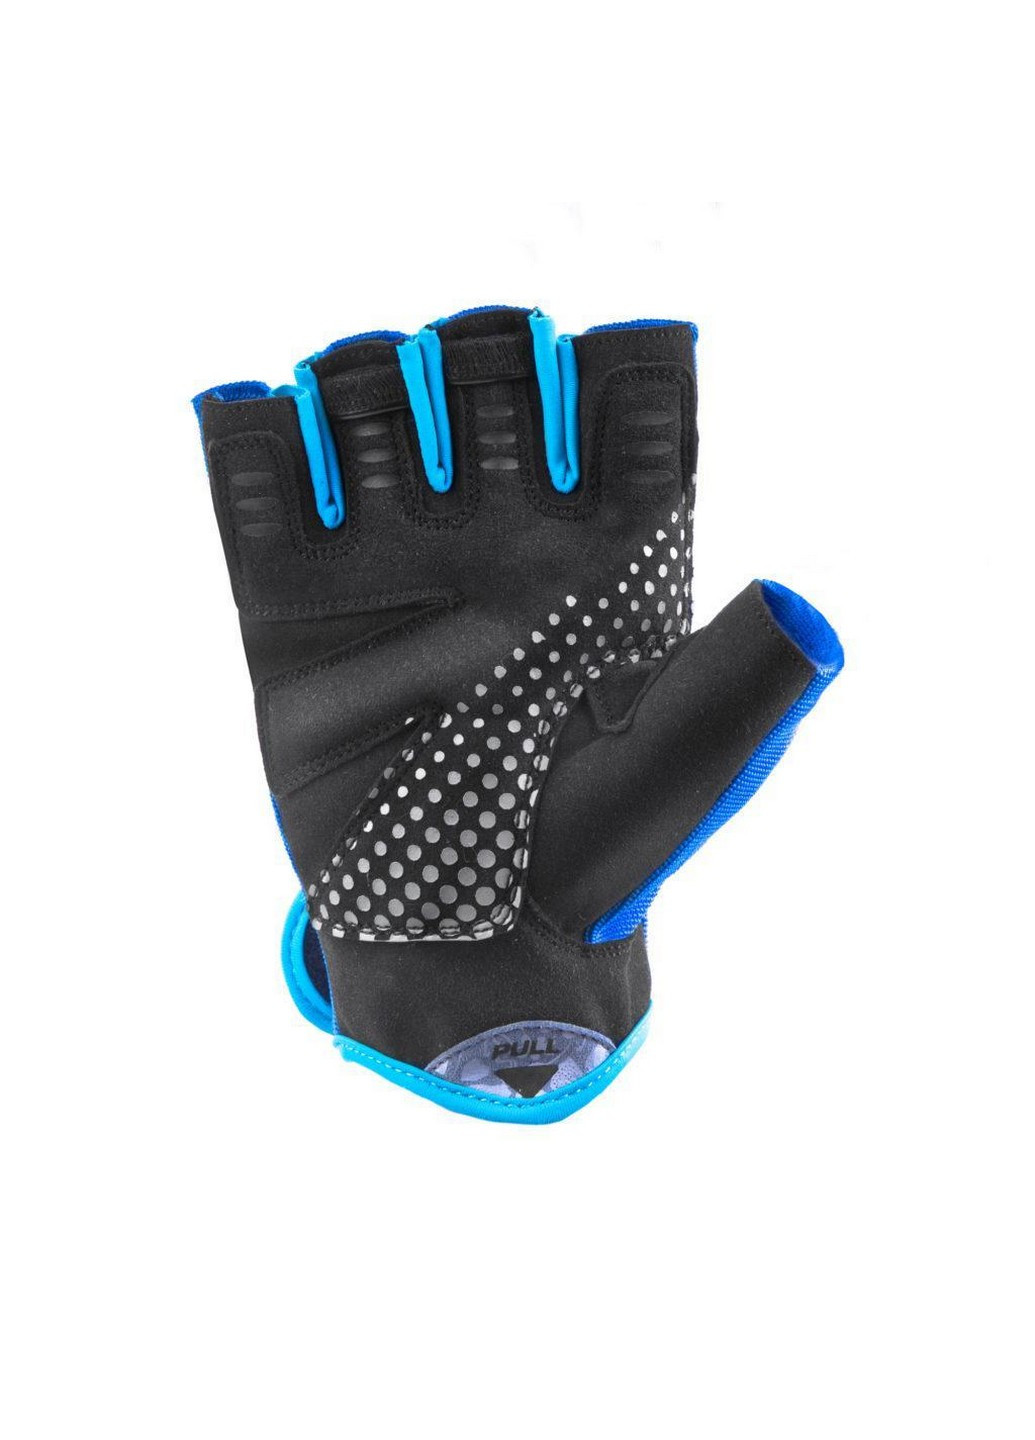 Жіночі рукавички для фітнесу M Spokey (205330499)